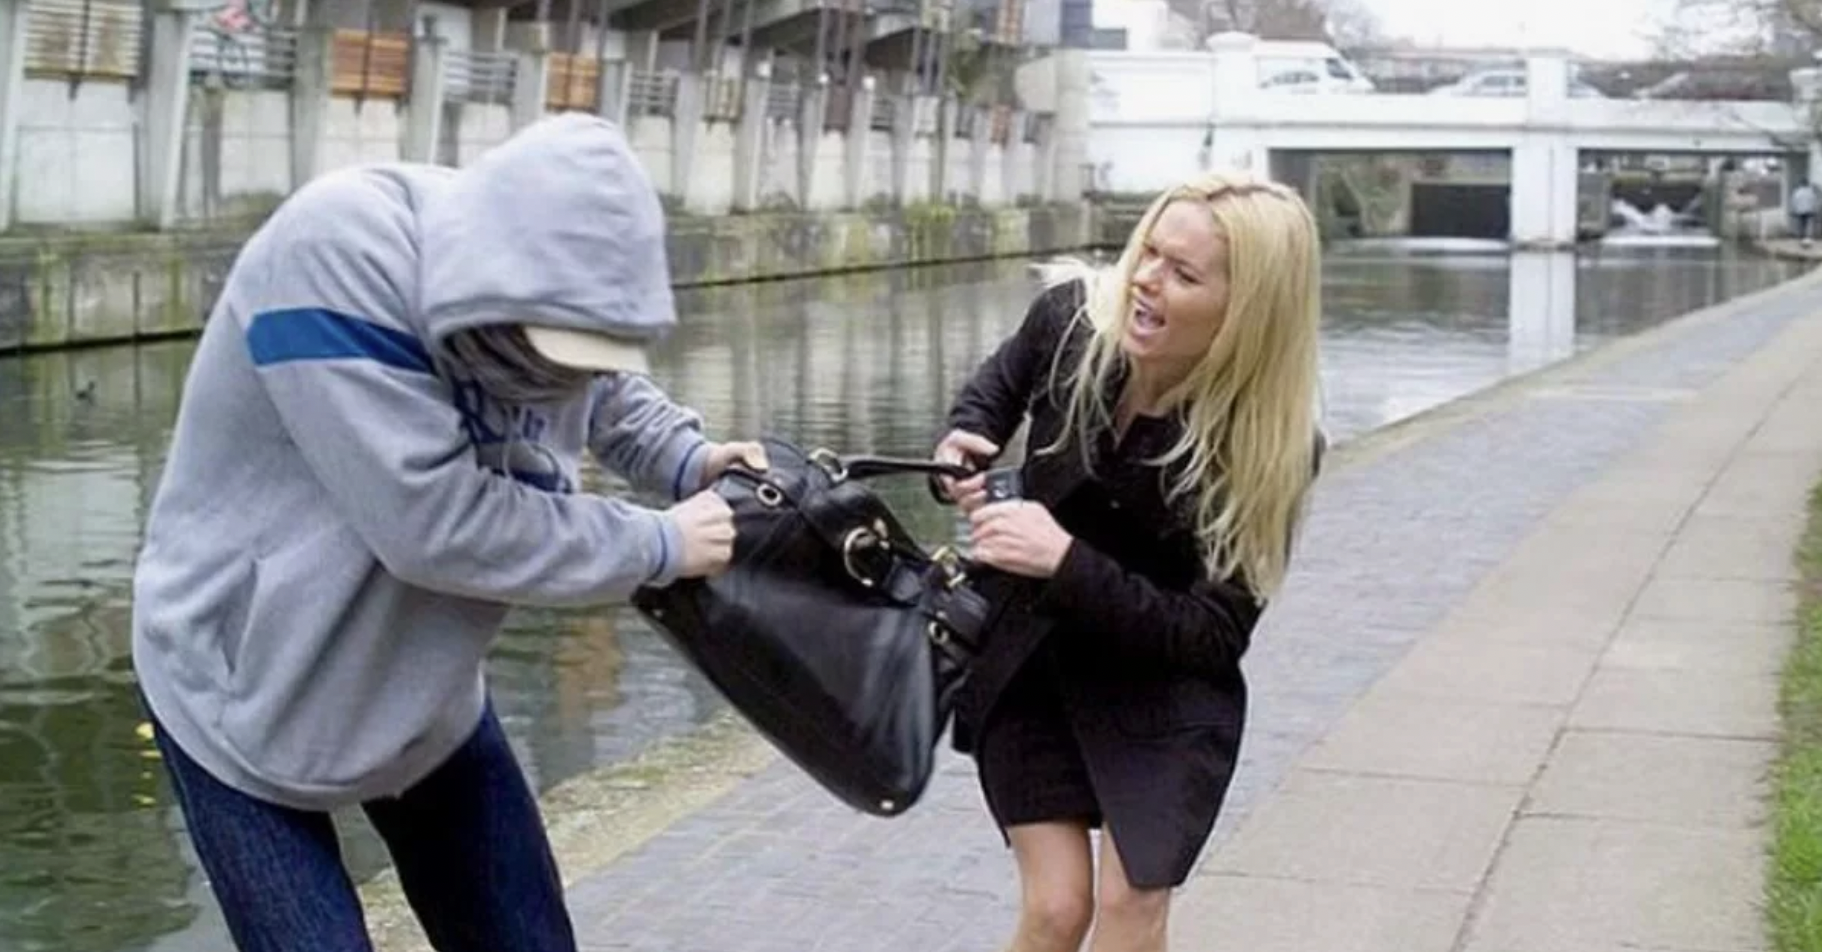 Ladrón callejero intentando robar el bolso a una mujer | Foto: Shutterstock